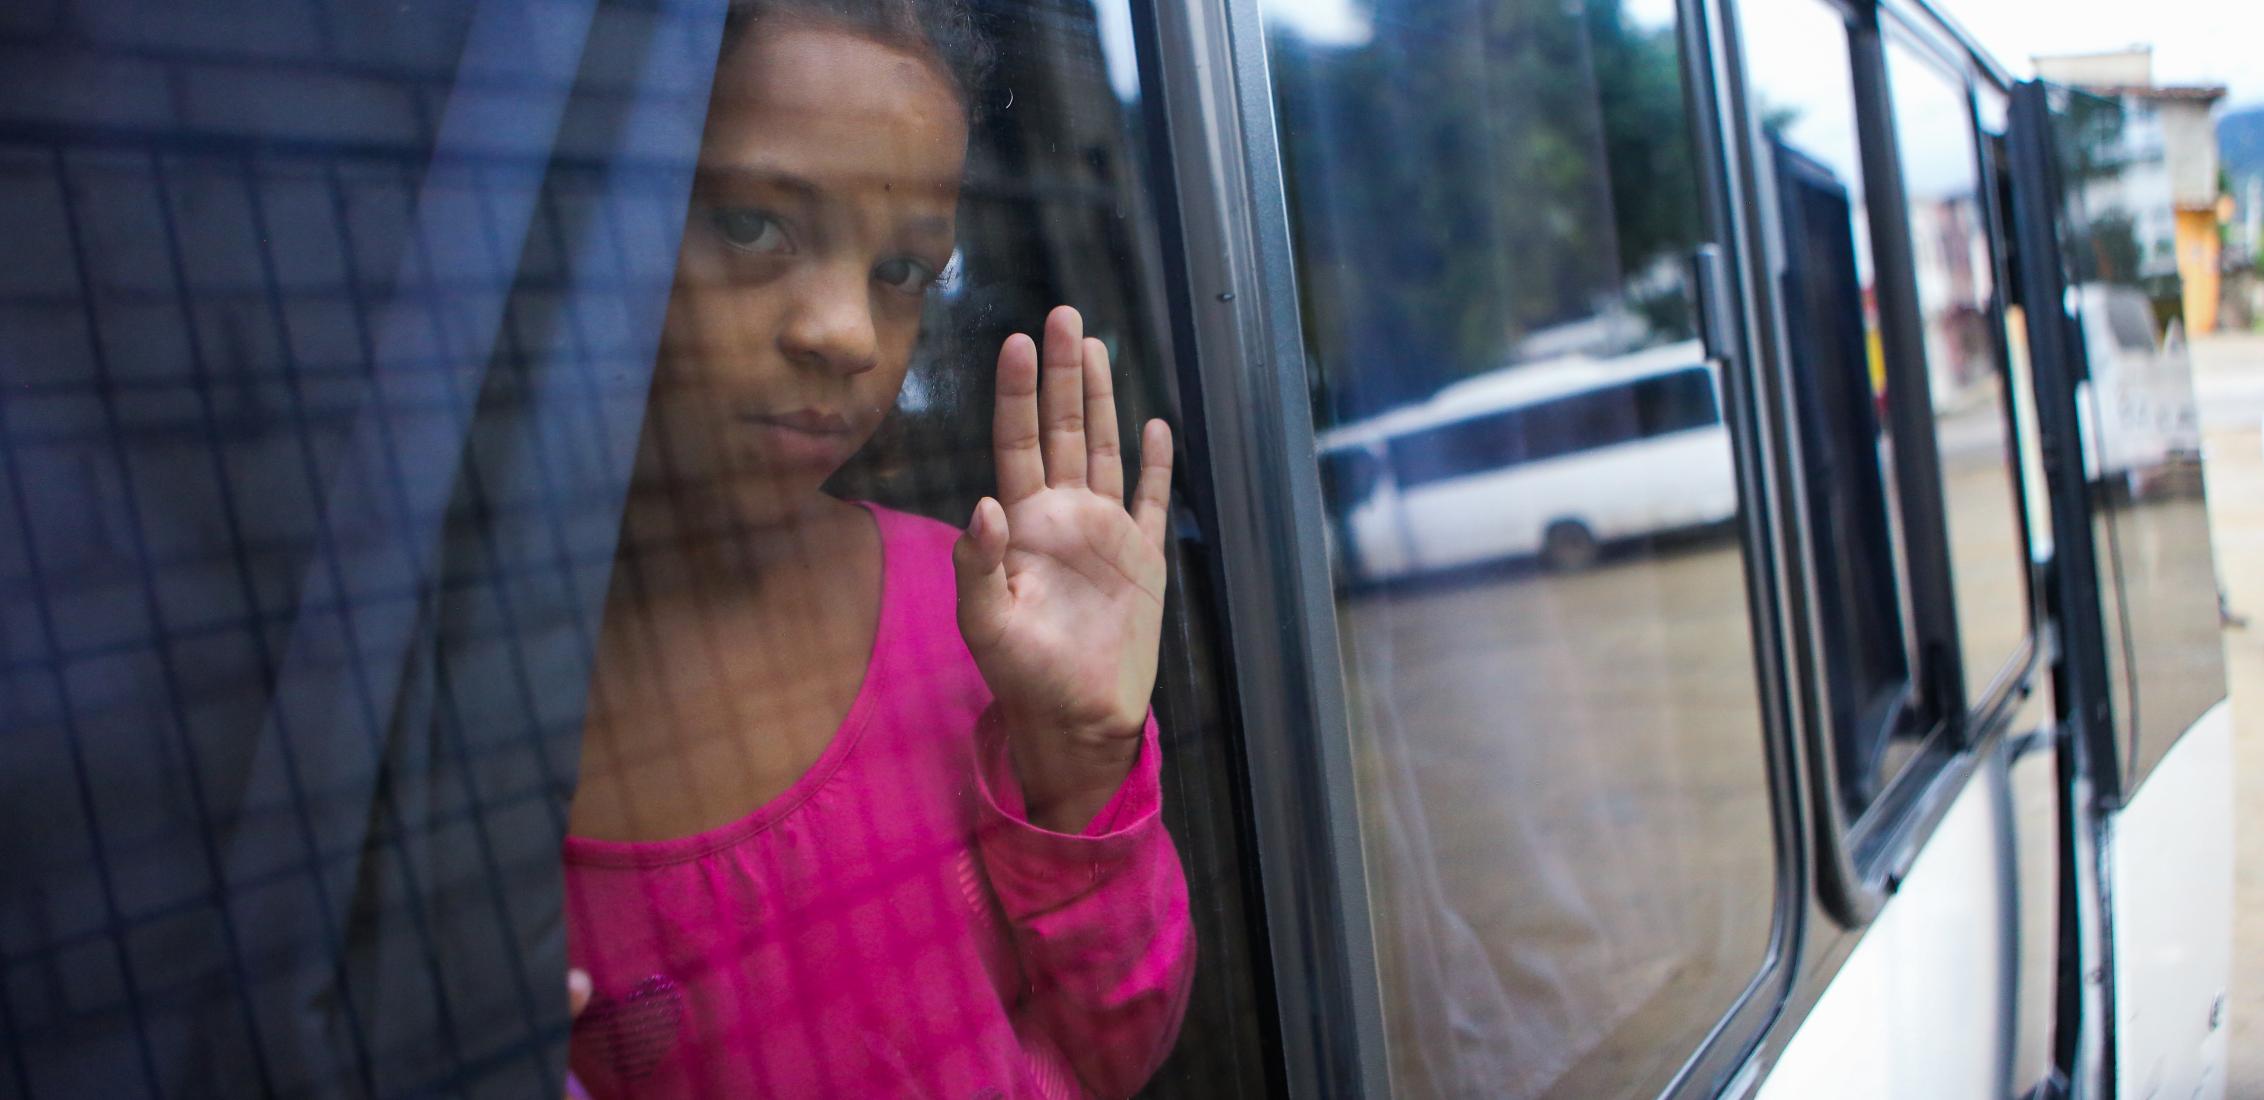 UNI480116/Membreño Edguimar, 10 ans, regarde par la fenêtre du bus qui la transportera à Tegucigalpa pour suivre la route migratoire vers les États-Unis, après avoir quitté le centre de repos temporaire "Alivio del Sufrimiento" situé à El Paraíso, le 4 novembre 2023 au Honduras.